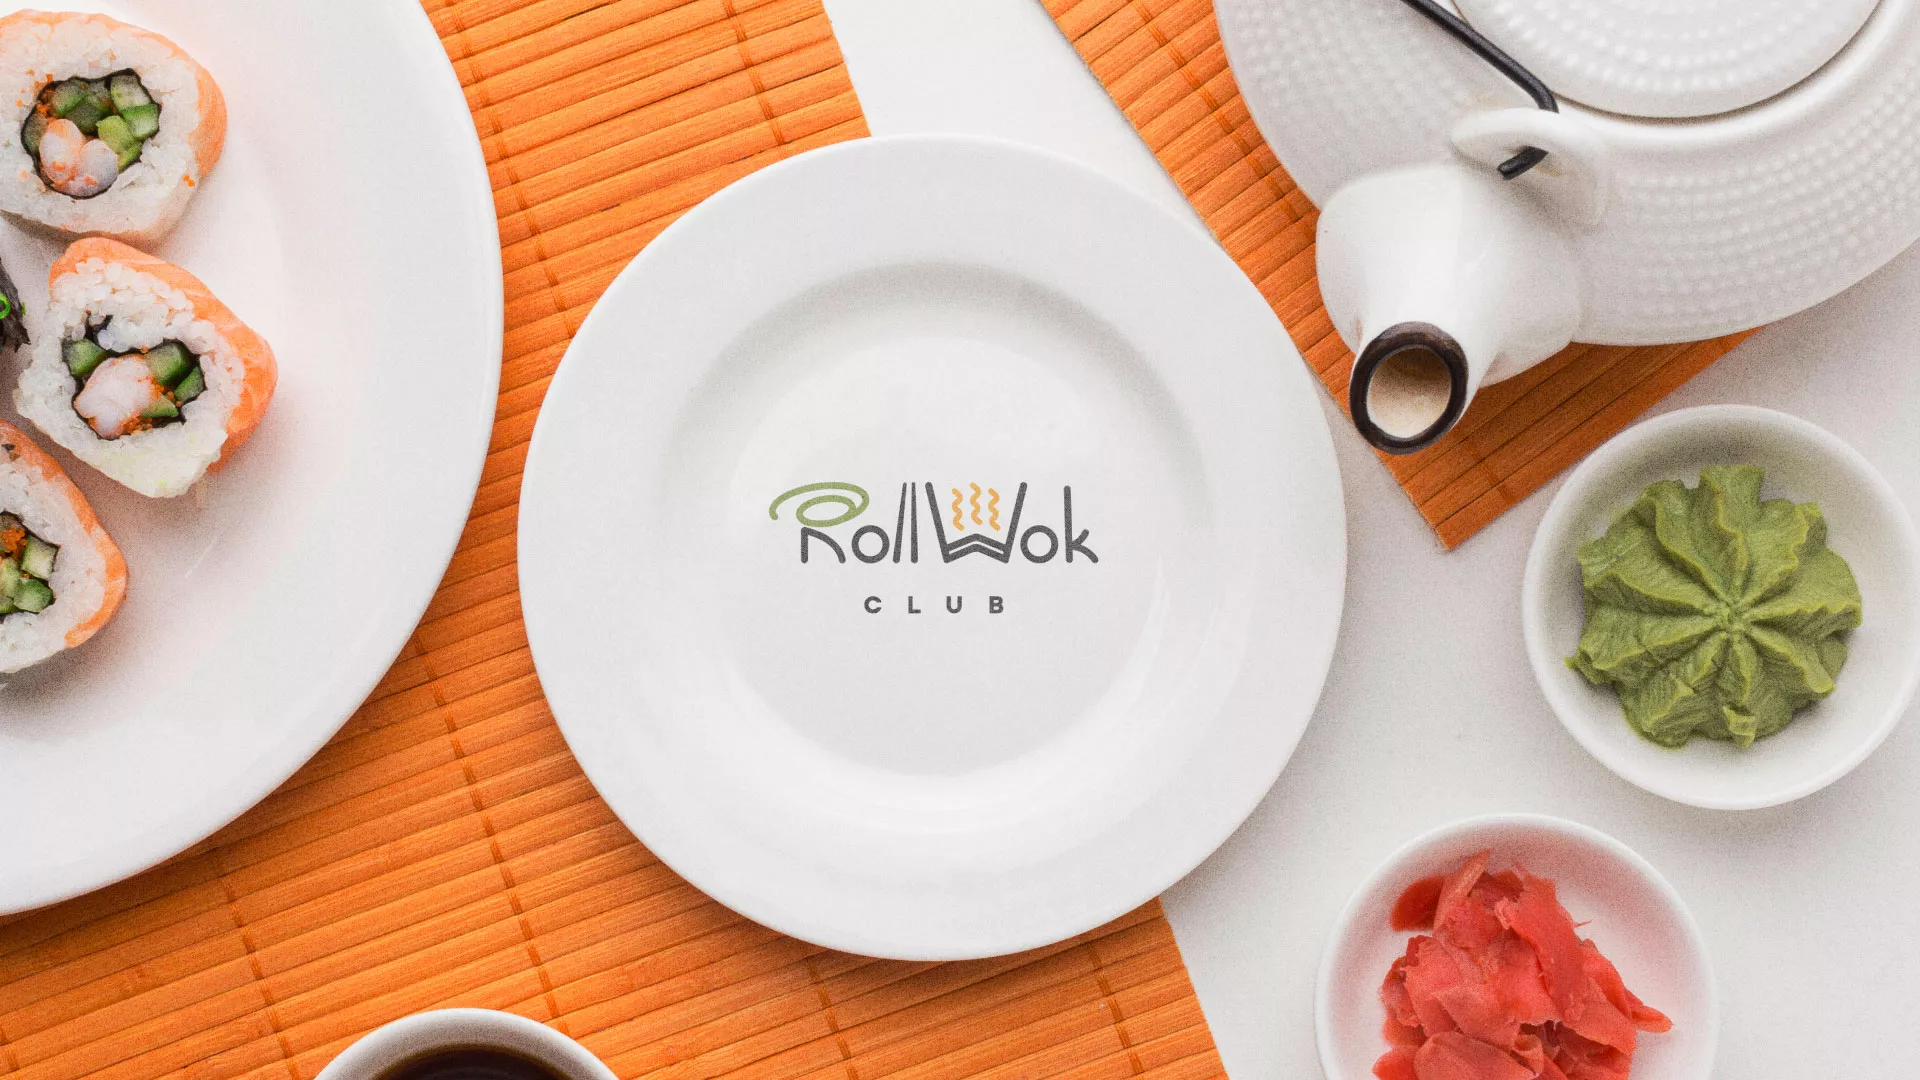 Разработка логотипа и фирменного стиля суши-бара «Roll Wok Club» в Льгове